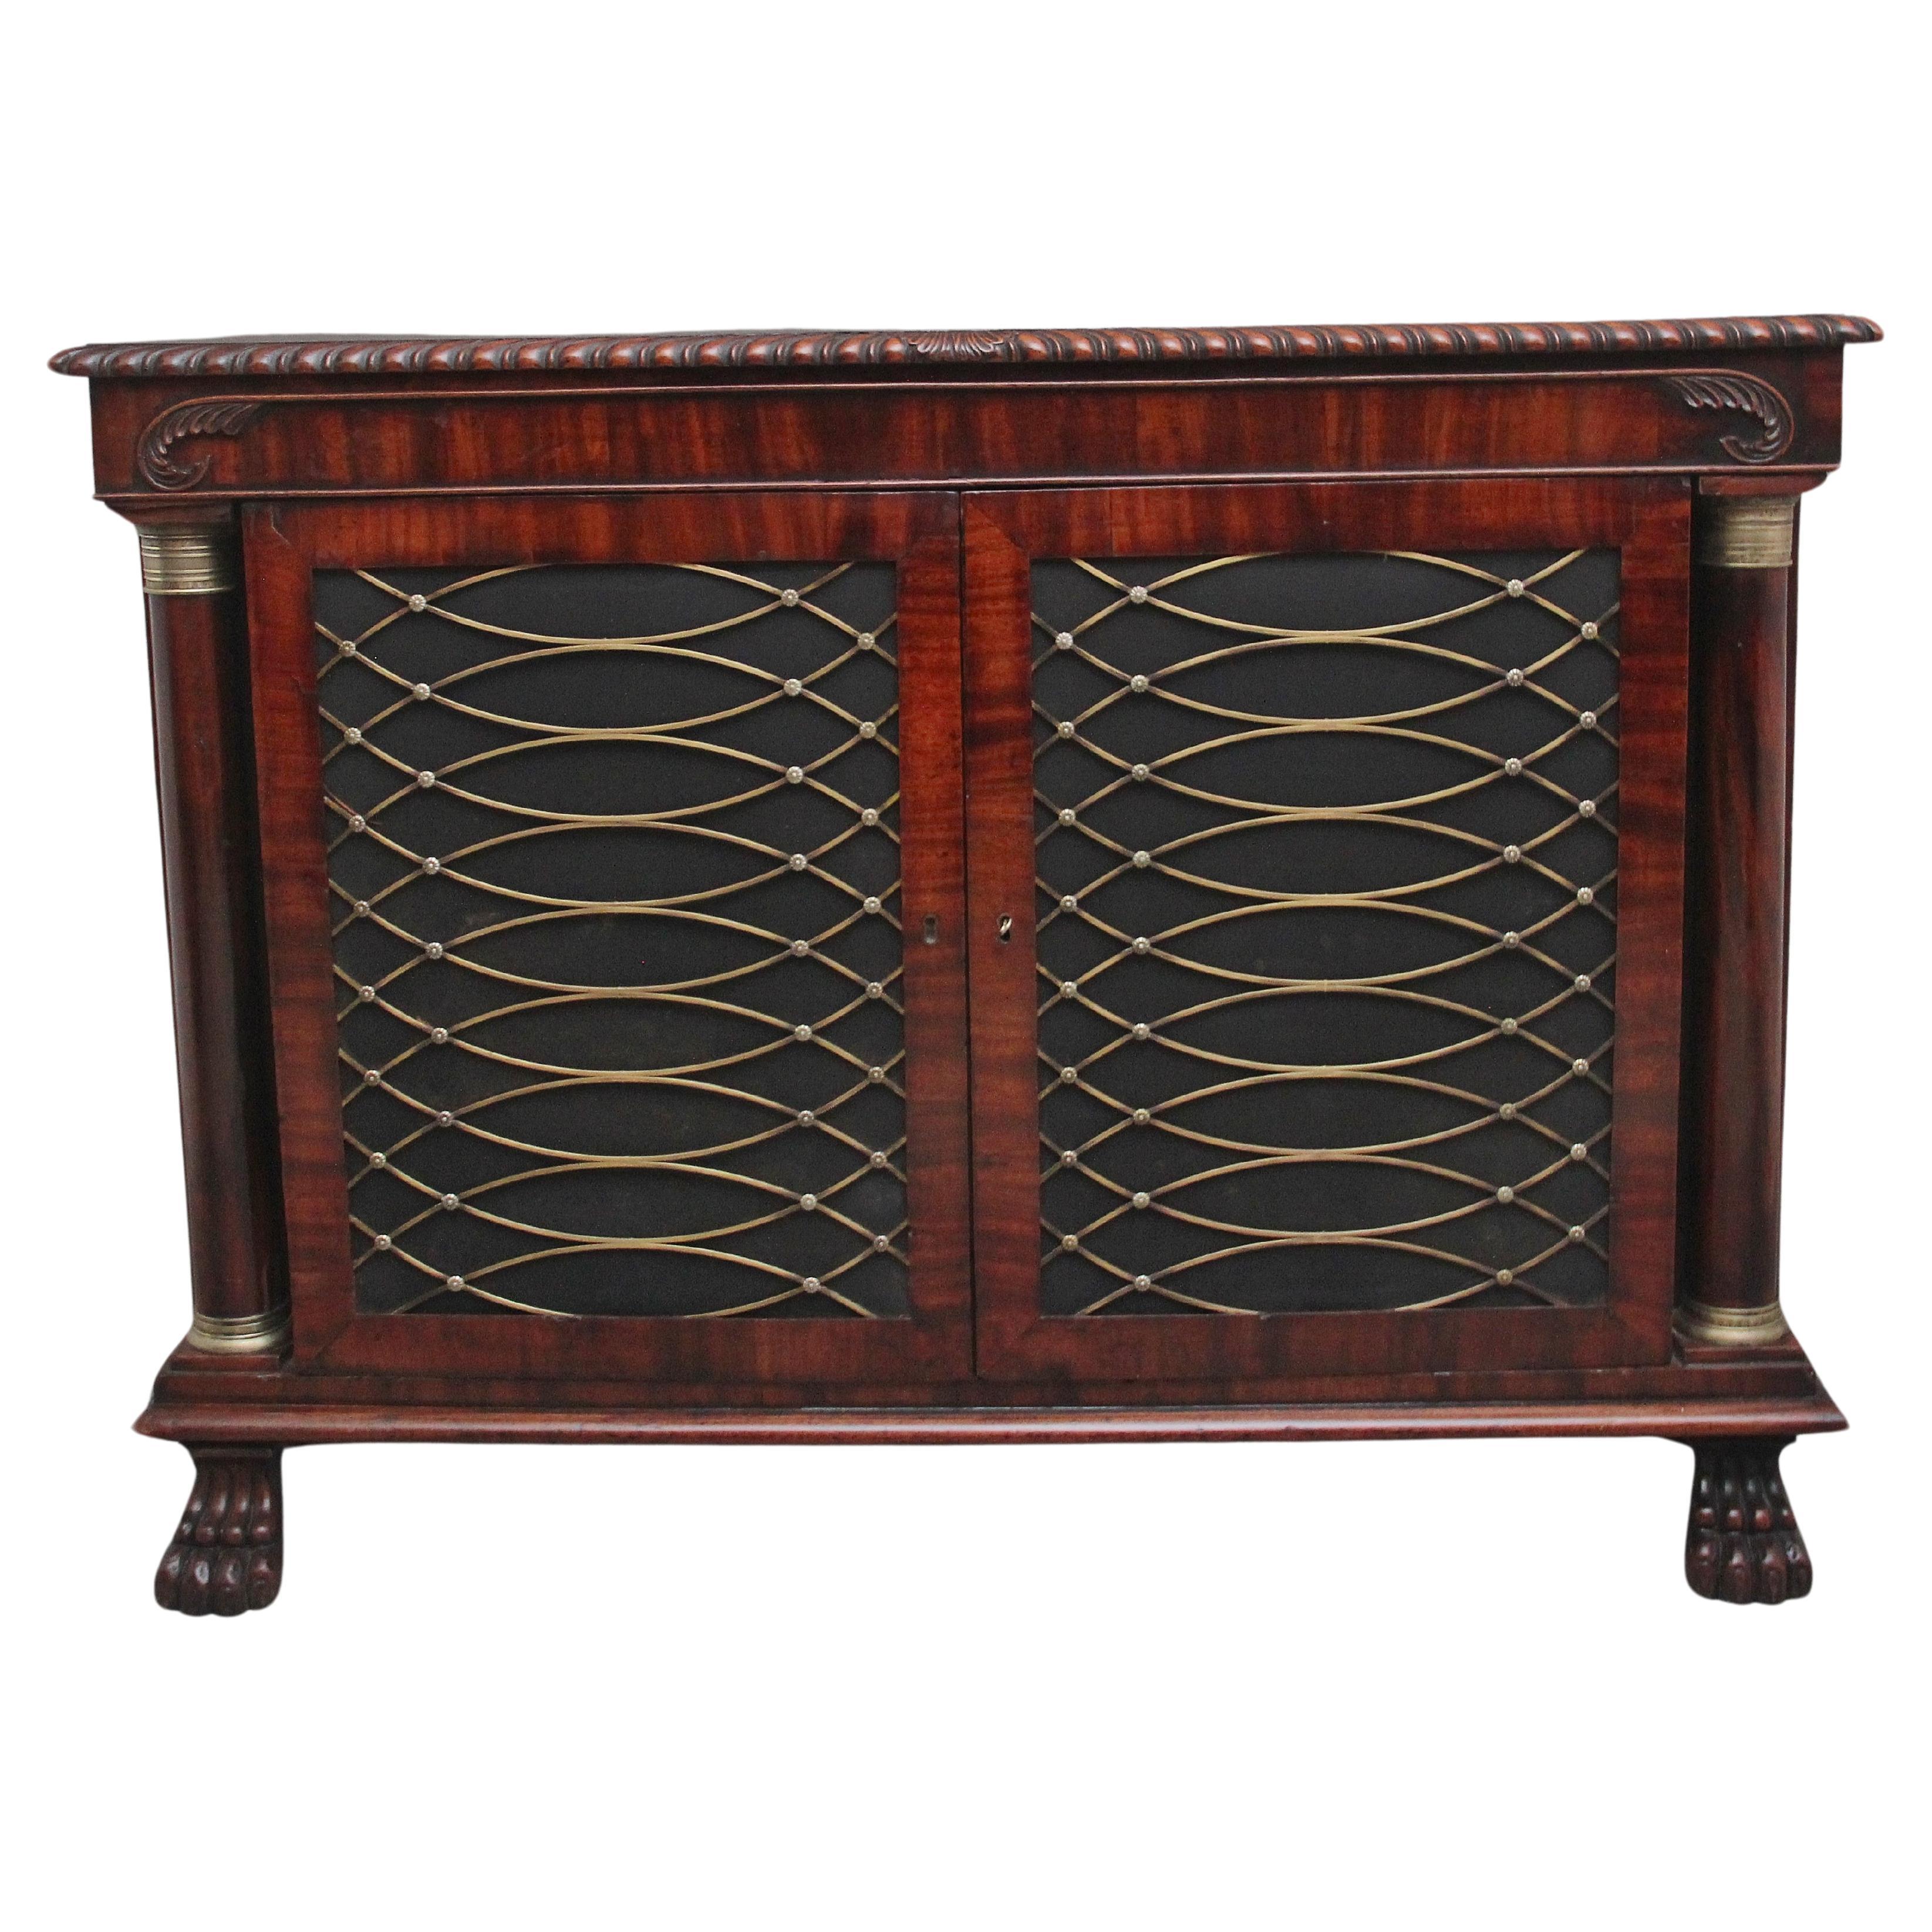 Un fabuleux meuble d'appoint en acajou du début du 19e siècle